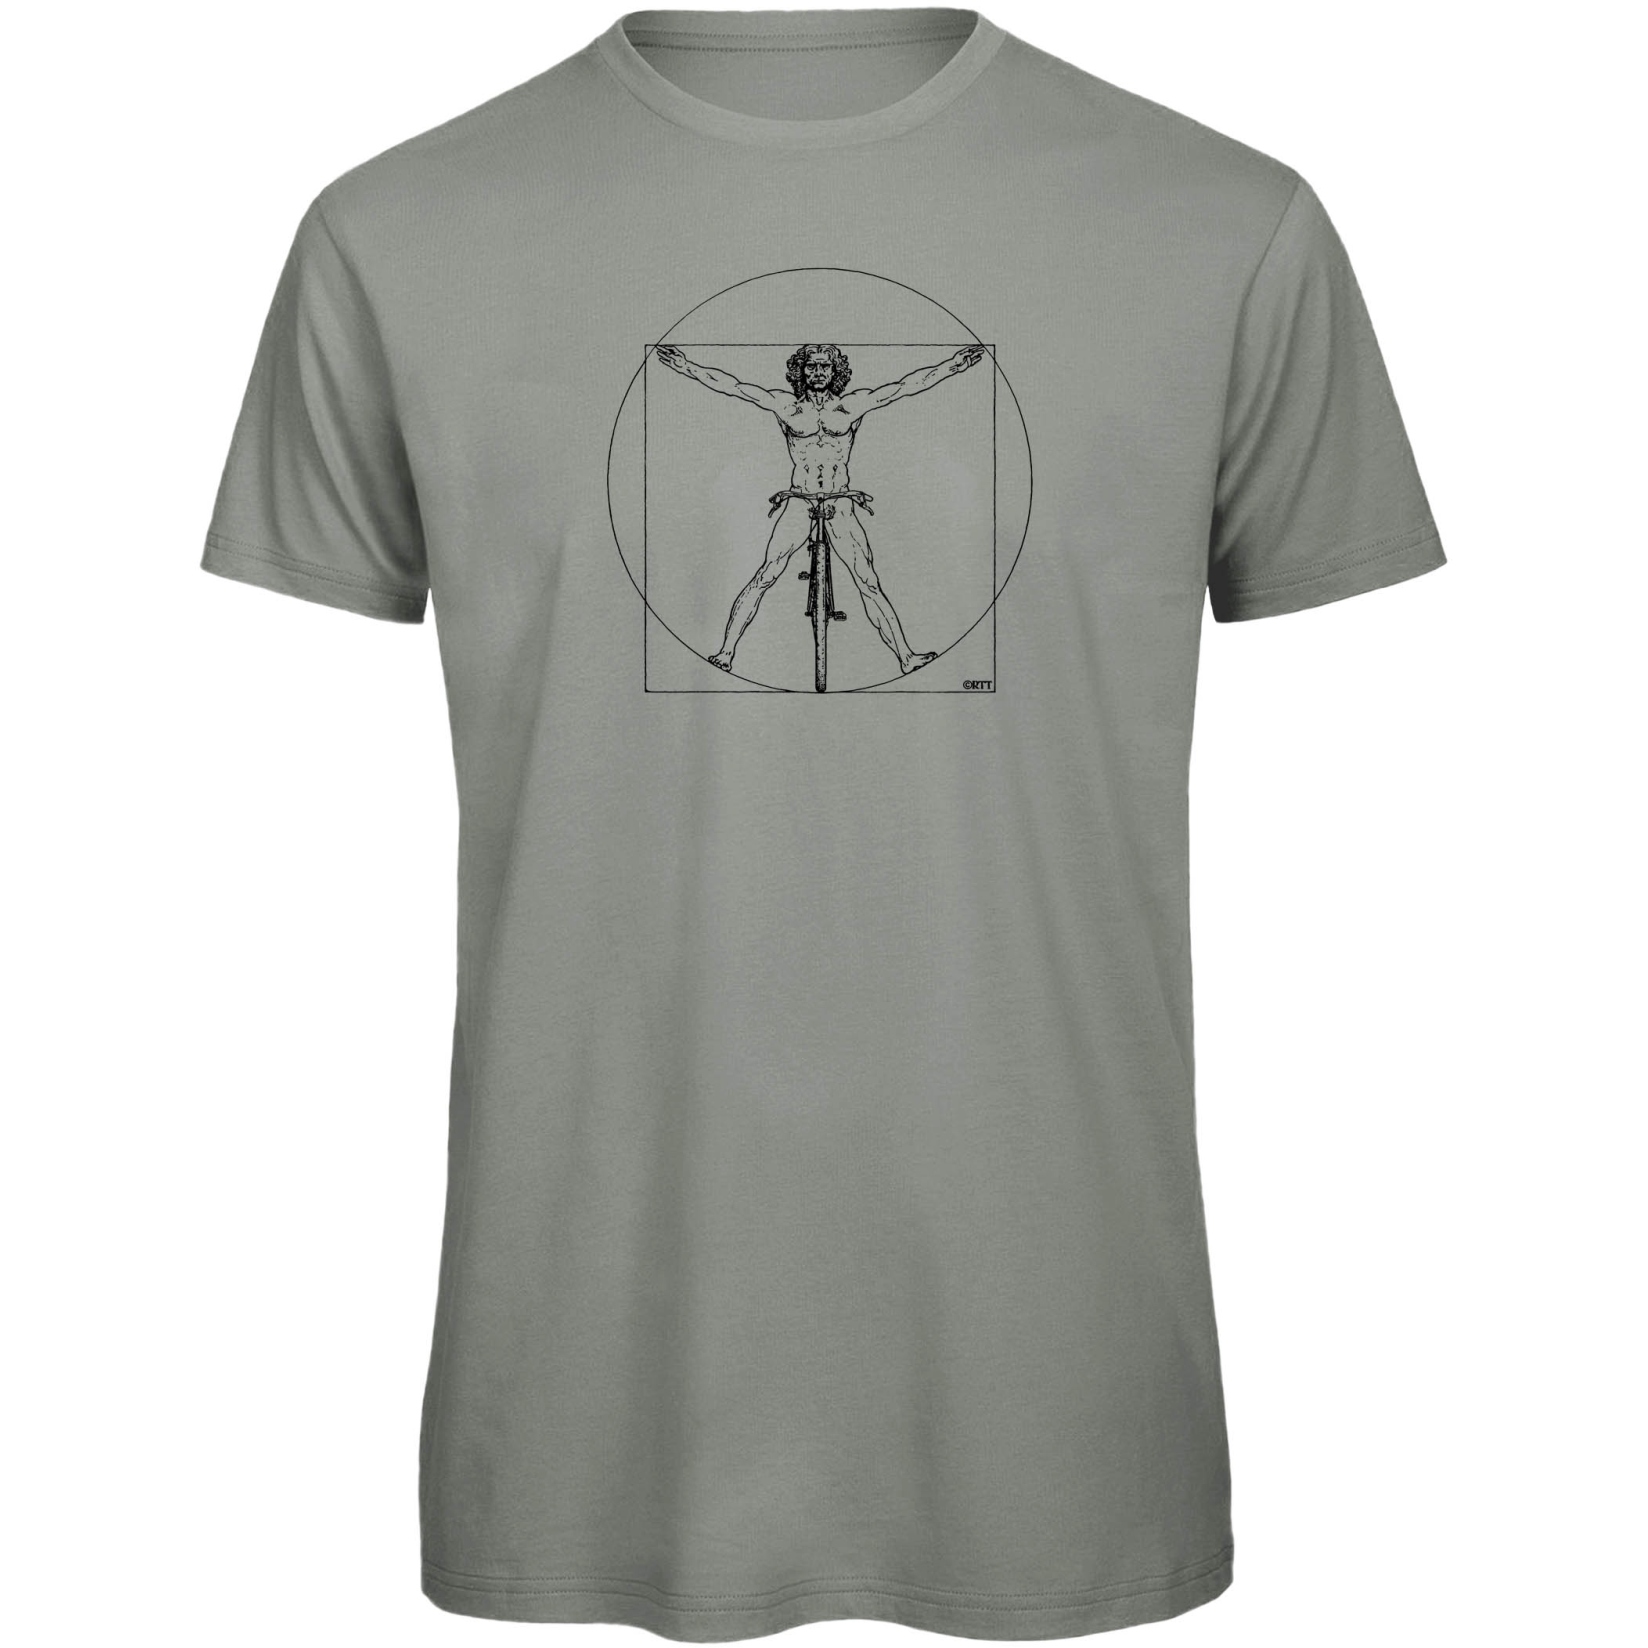 Produktbild von RTTshirts Fahrrad T-Shirt DaVinci - hellgrau